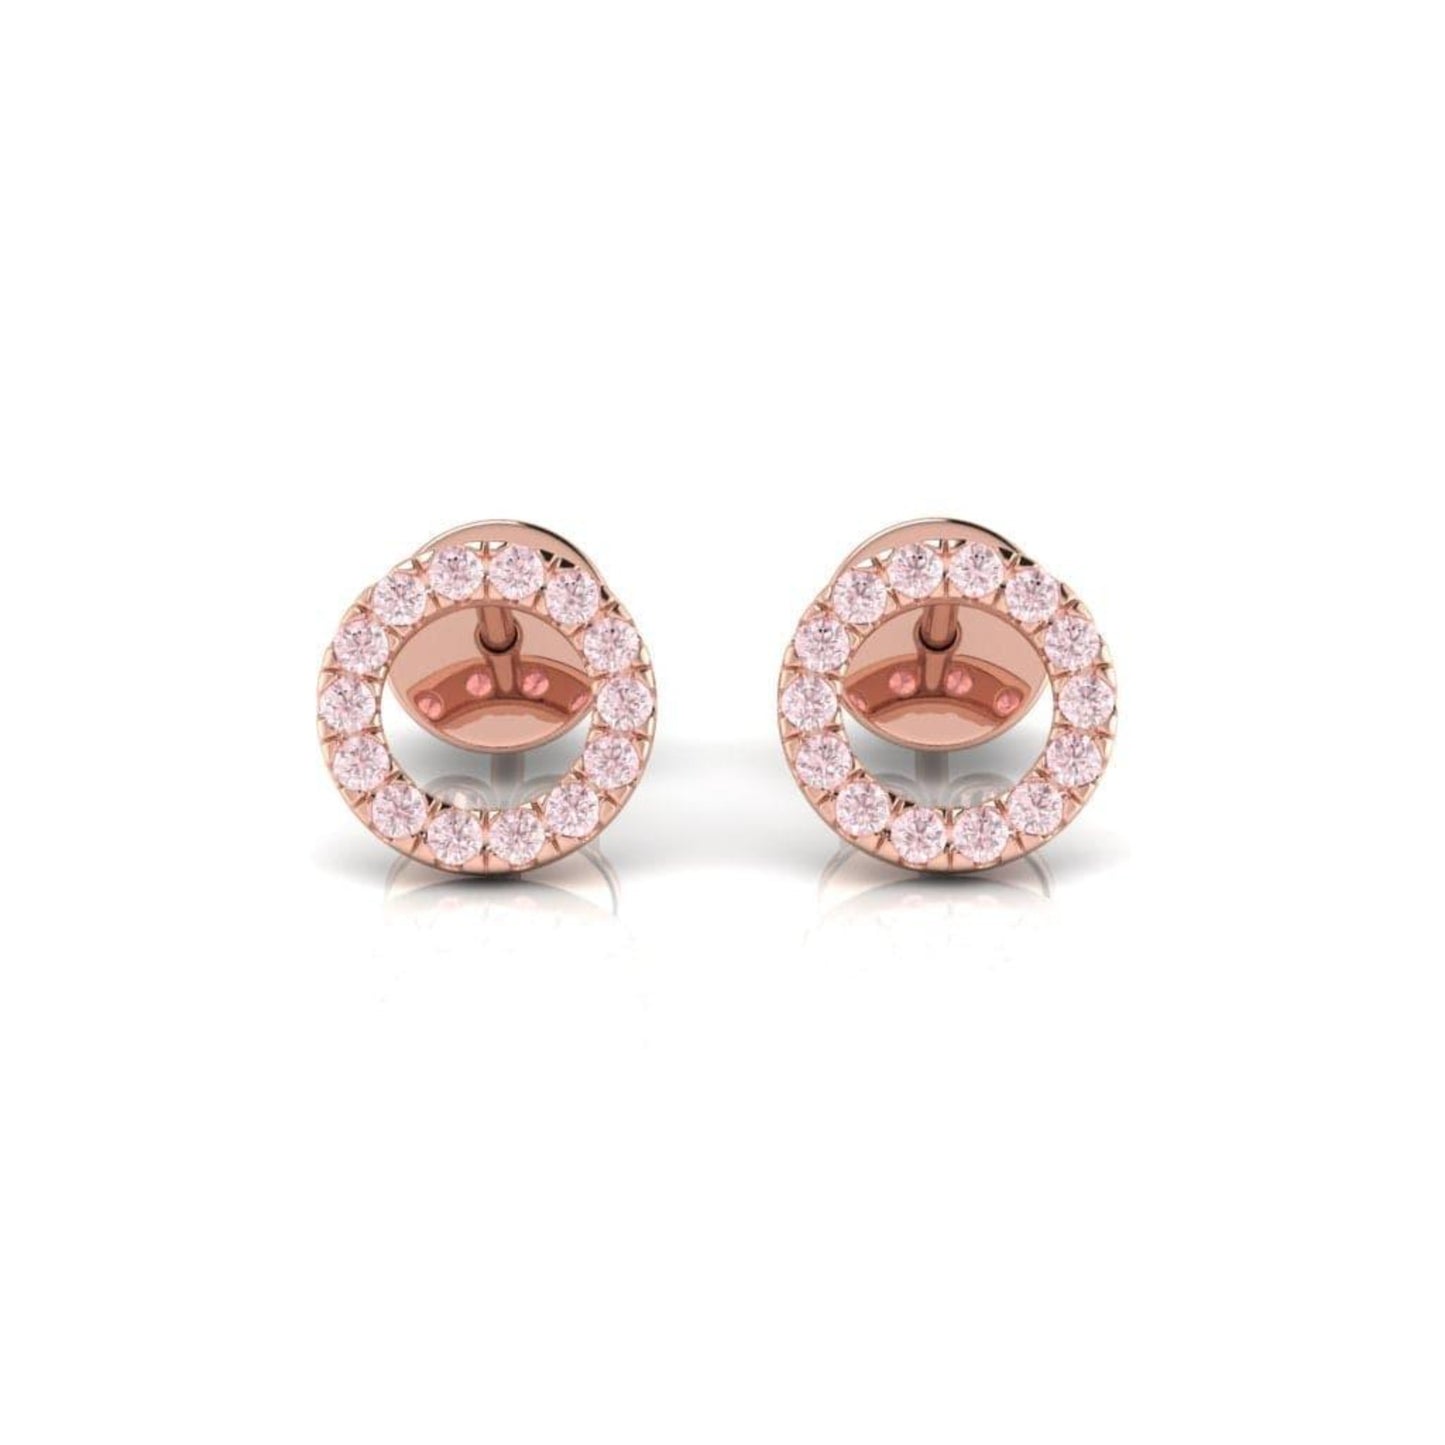 Eminence Pinks Circle of Life Earrings - Rosendorff Diamond Jewellers